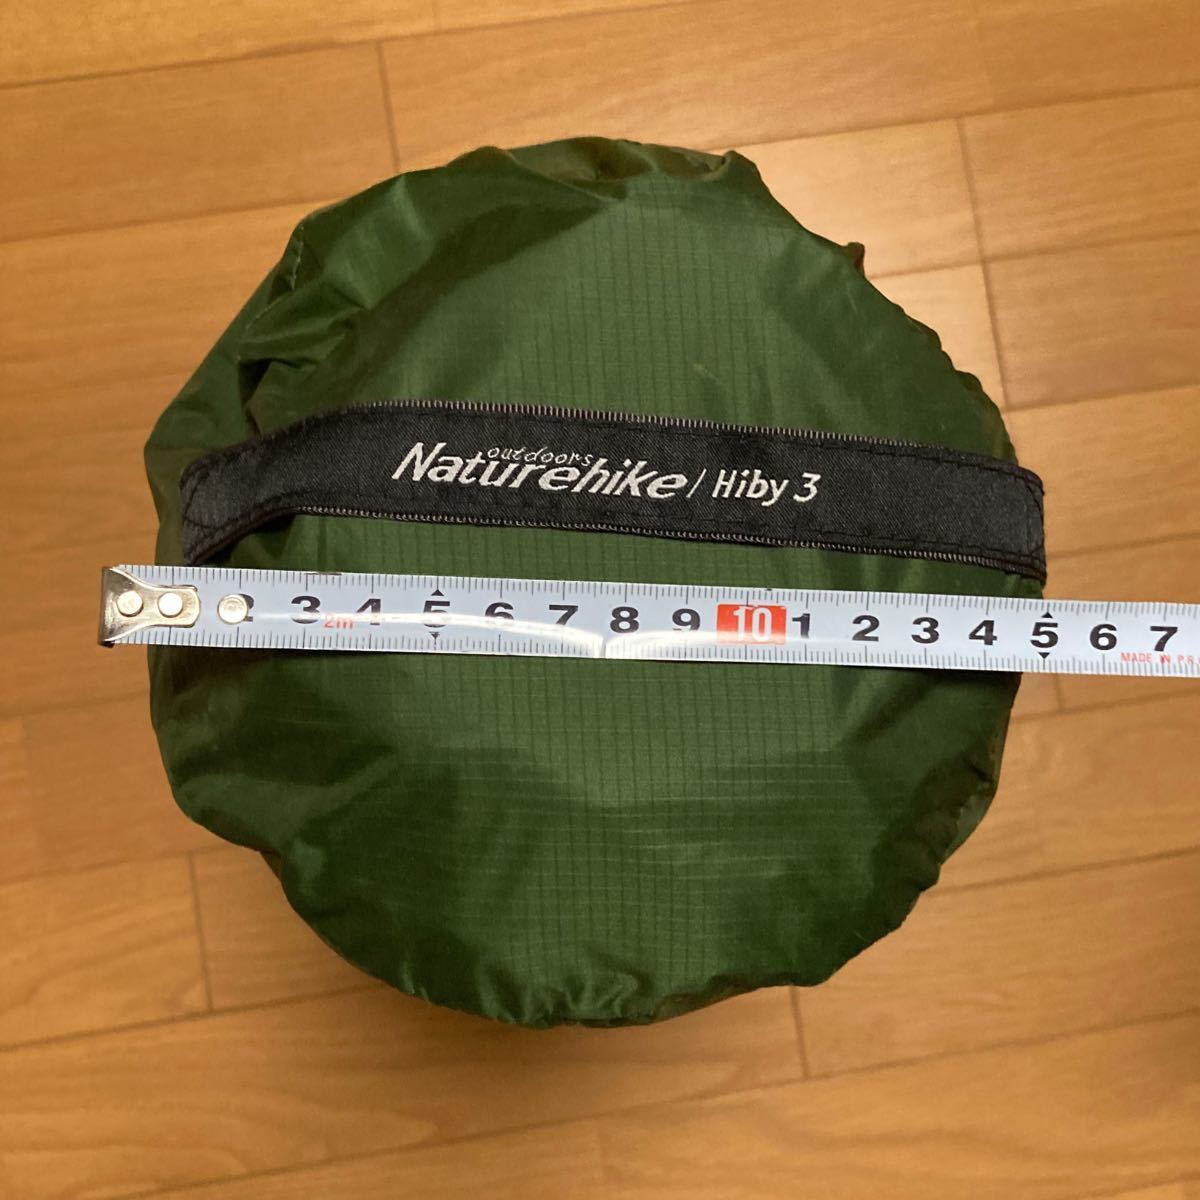 Naturehike(ネイチャーハイク) Hiby3 2-3人用 キャンプ テント アウトドア登山テント 